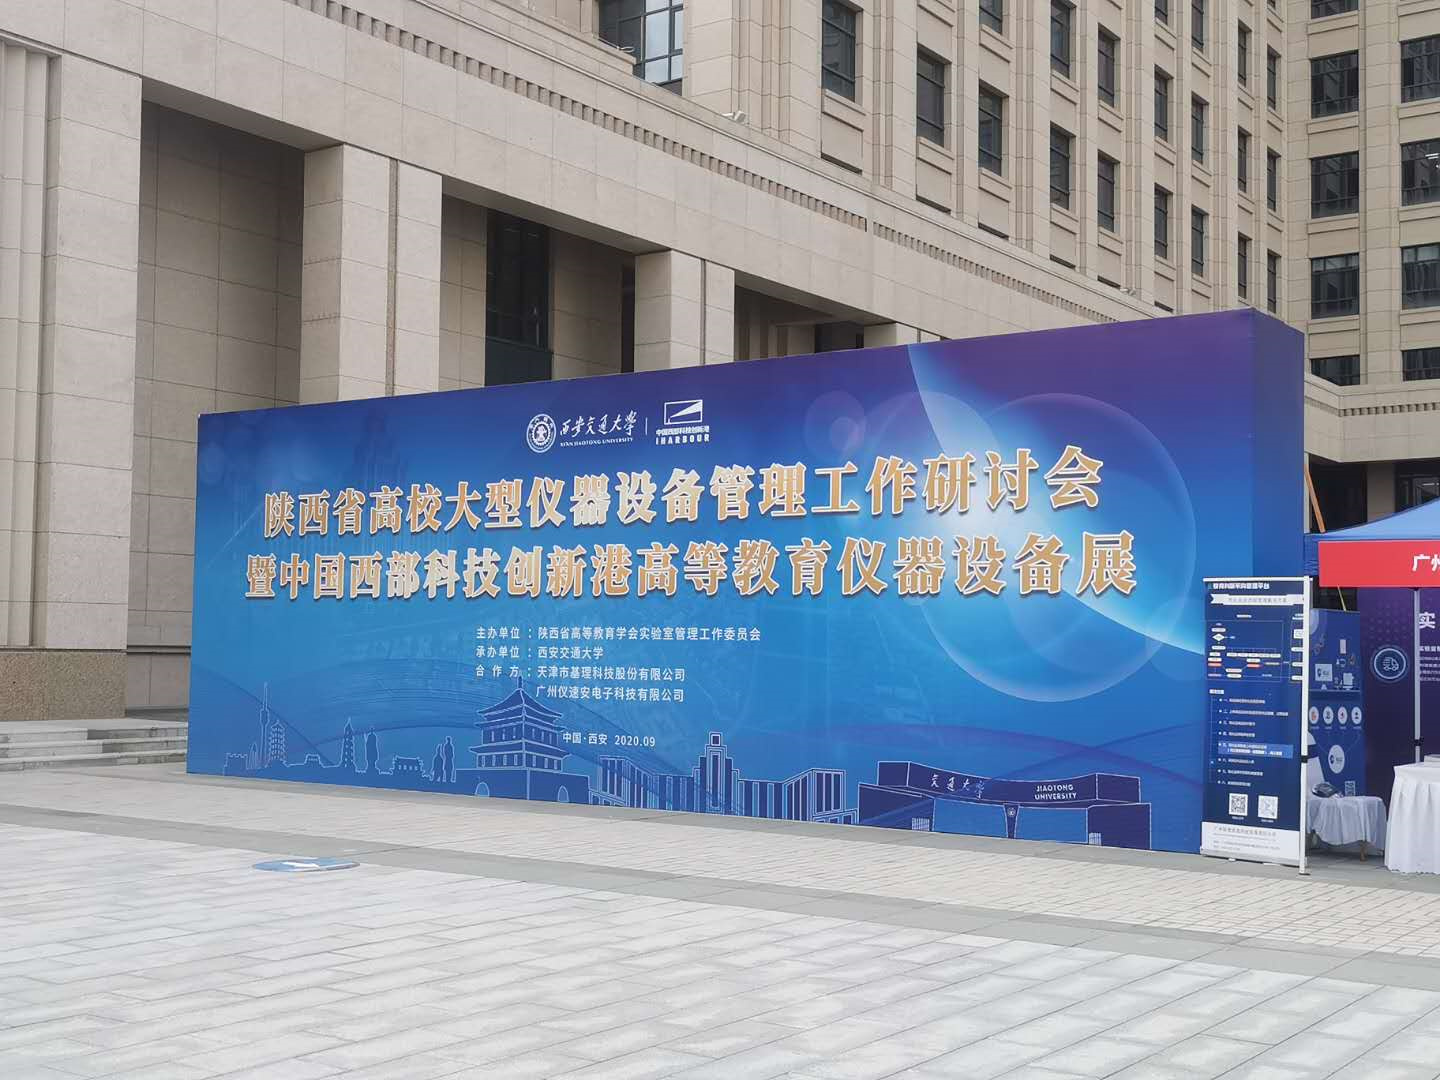 陕西省高校大型仪器设备开放共享研讨会-交大立异港